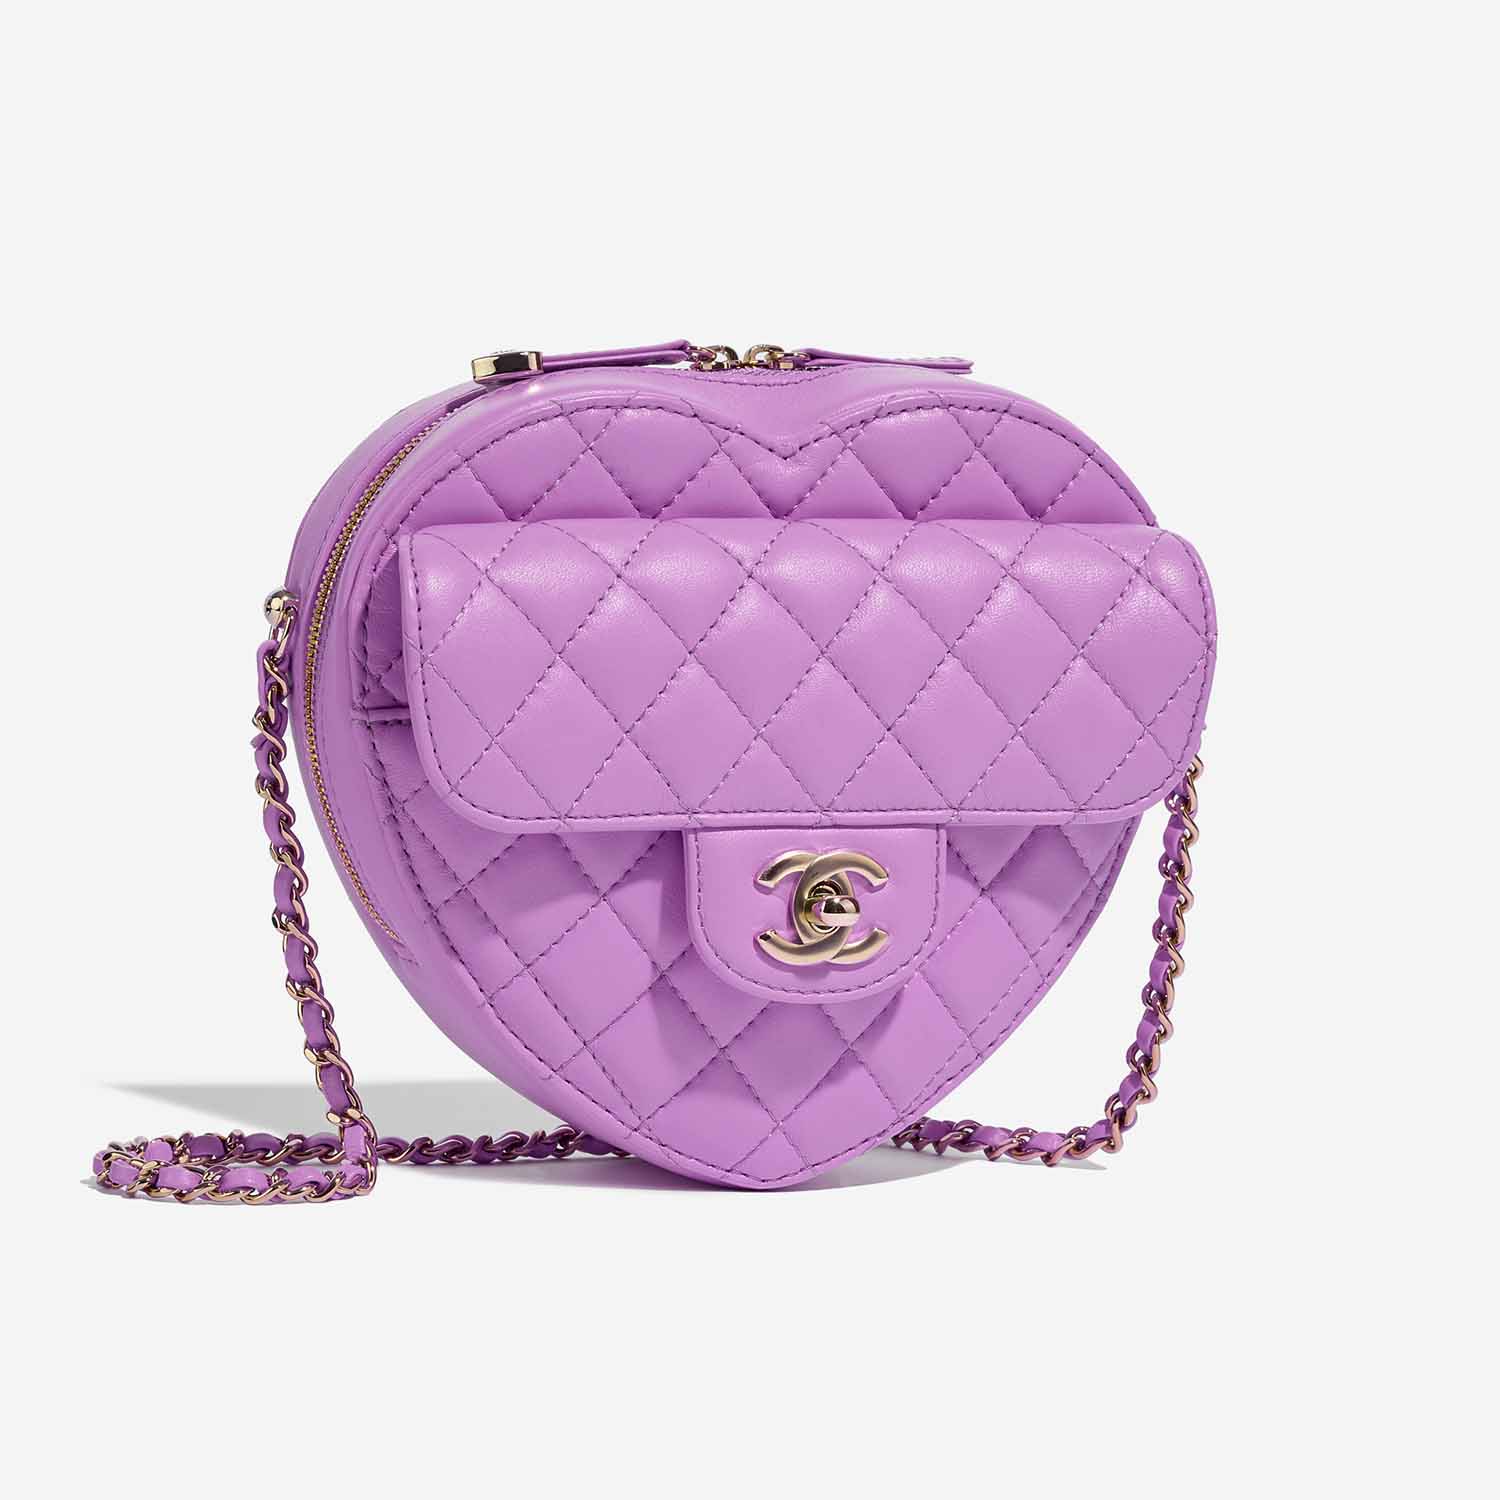 Chanel TimelessHeart Medium Violet Side Front | Verkaufen Sie Ihre Designer-Tasche auf Saclab.com